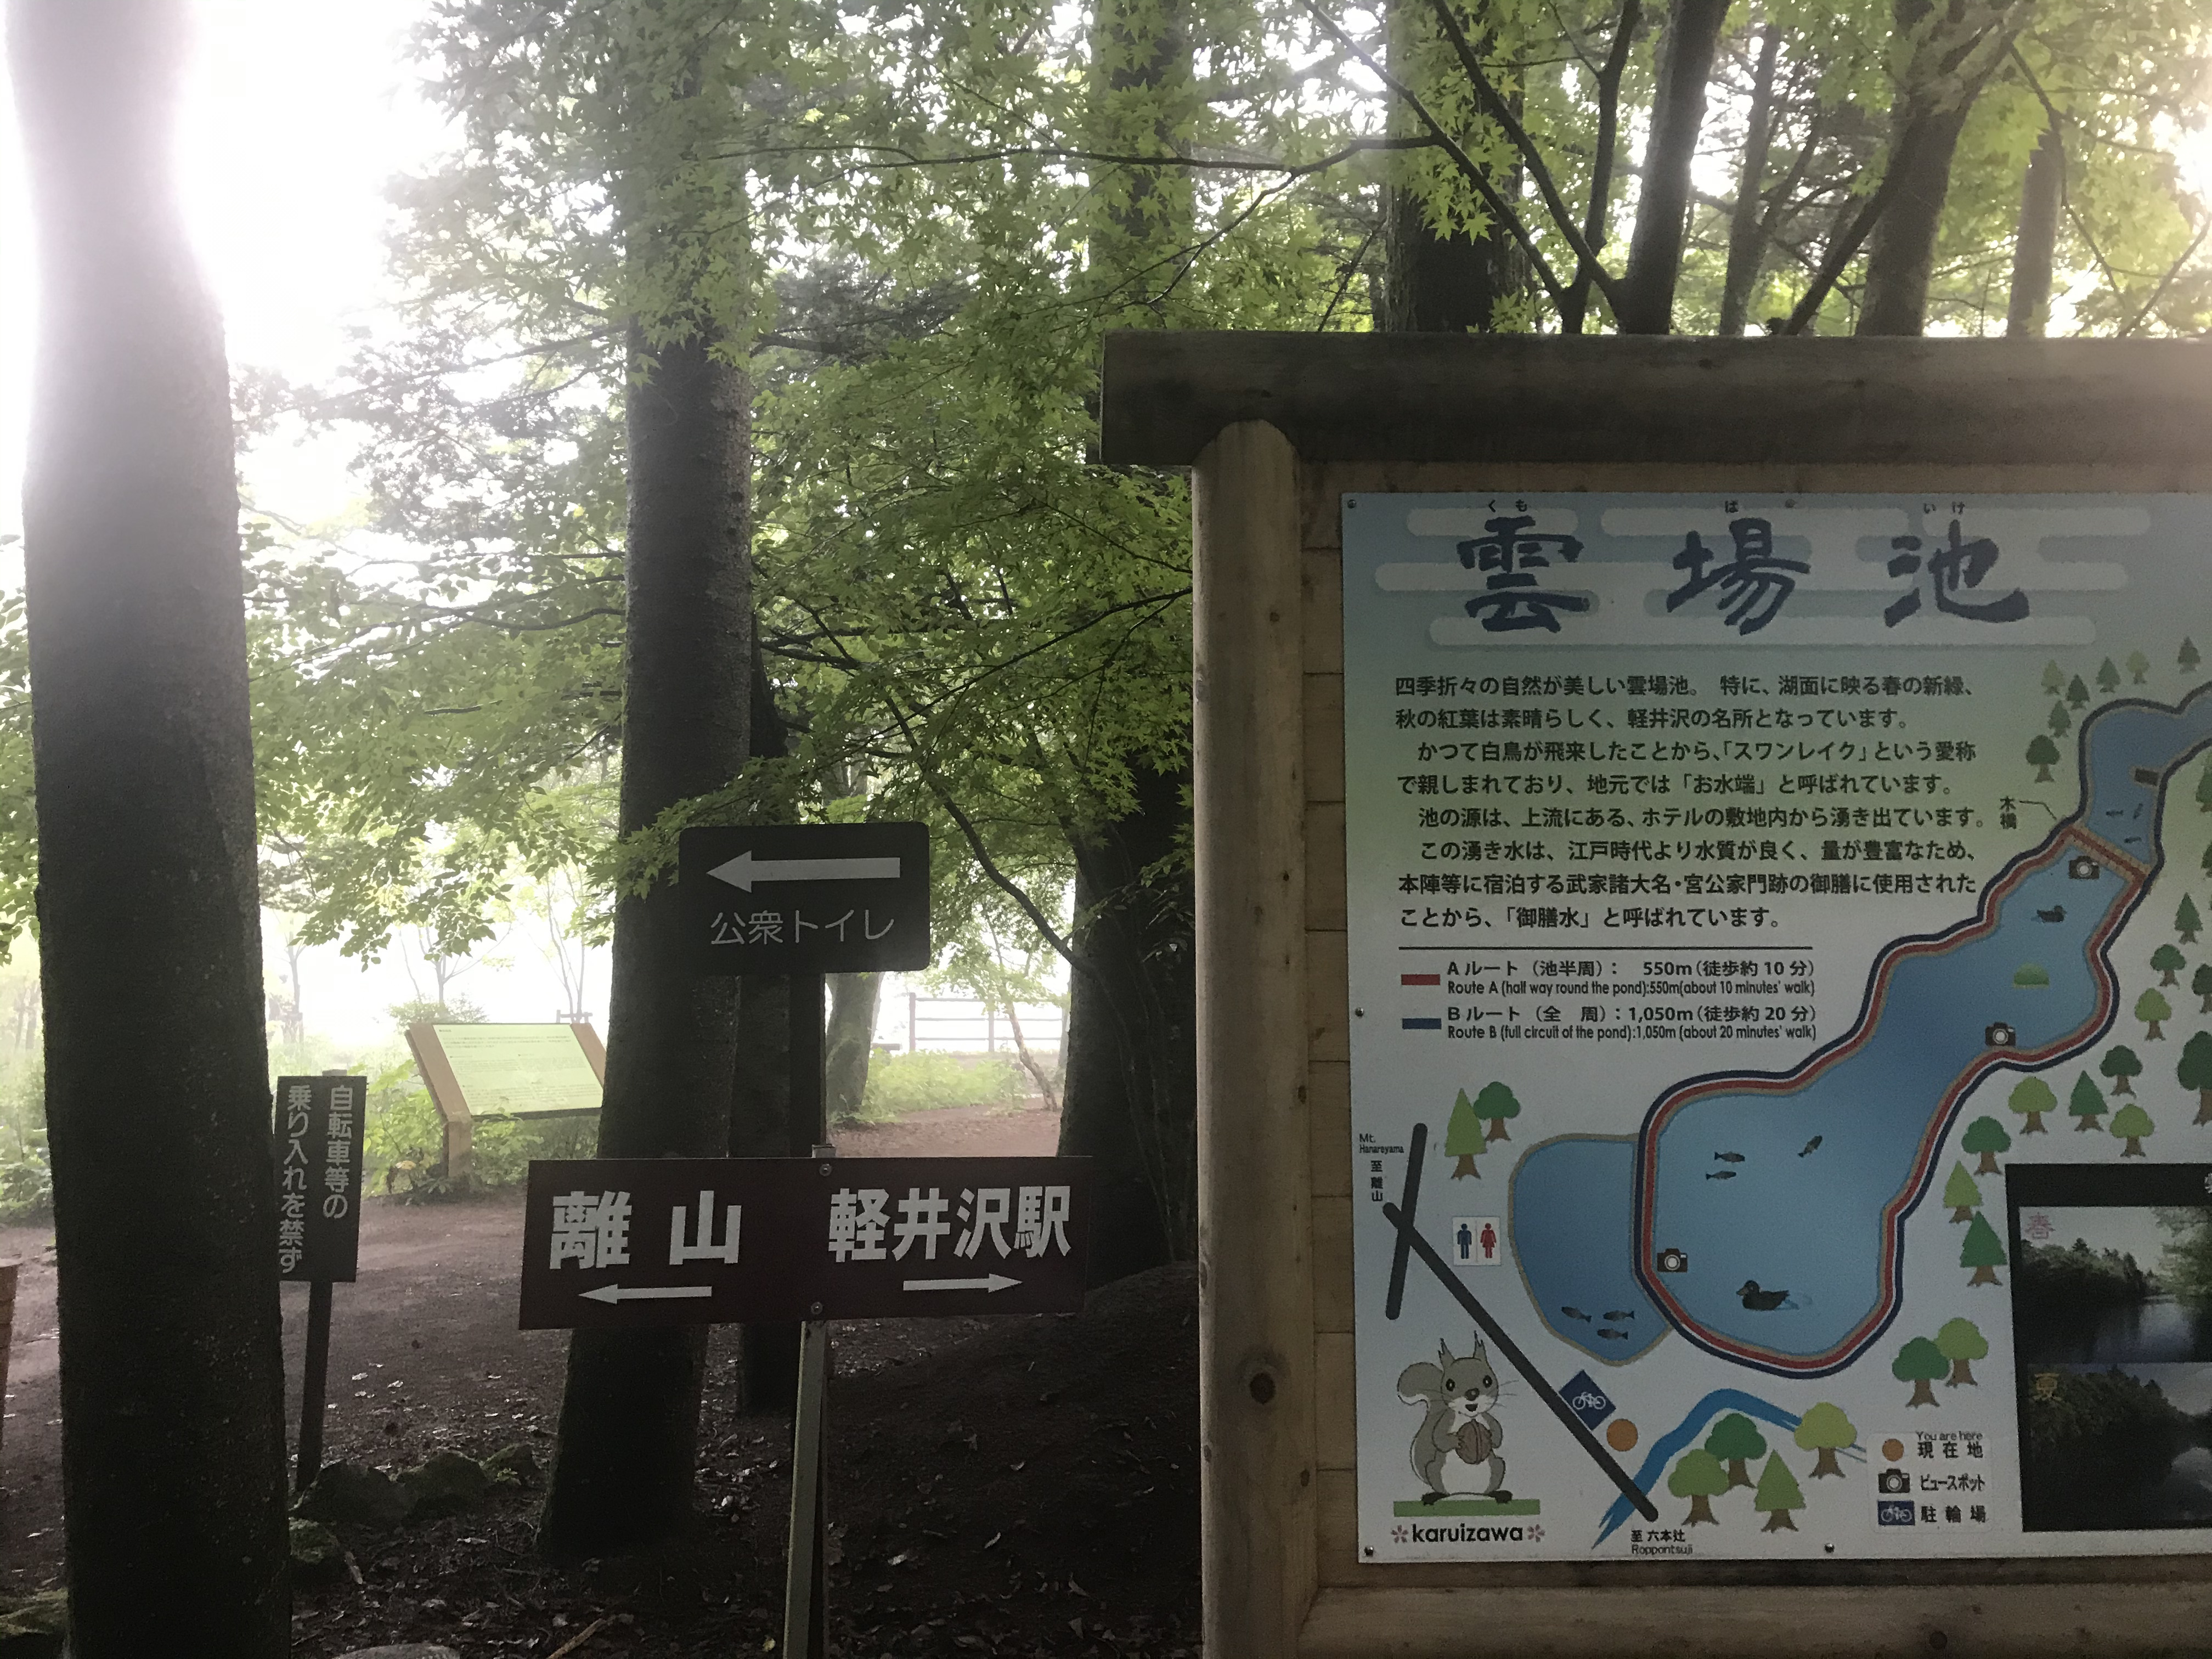 軽井沢の雲場池